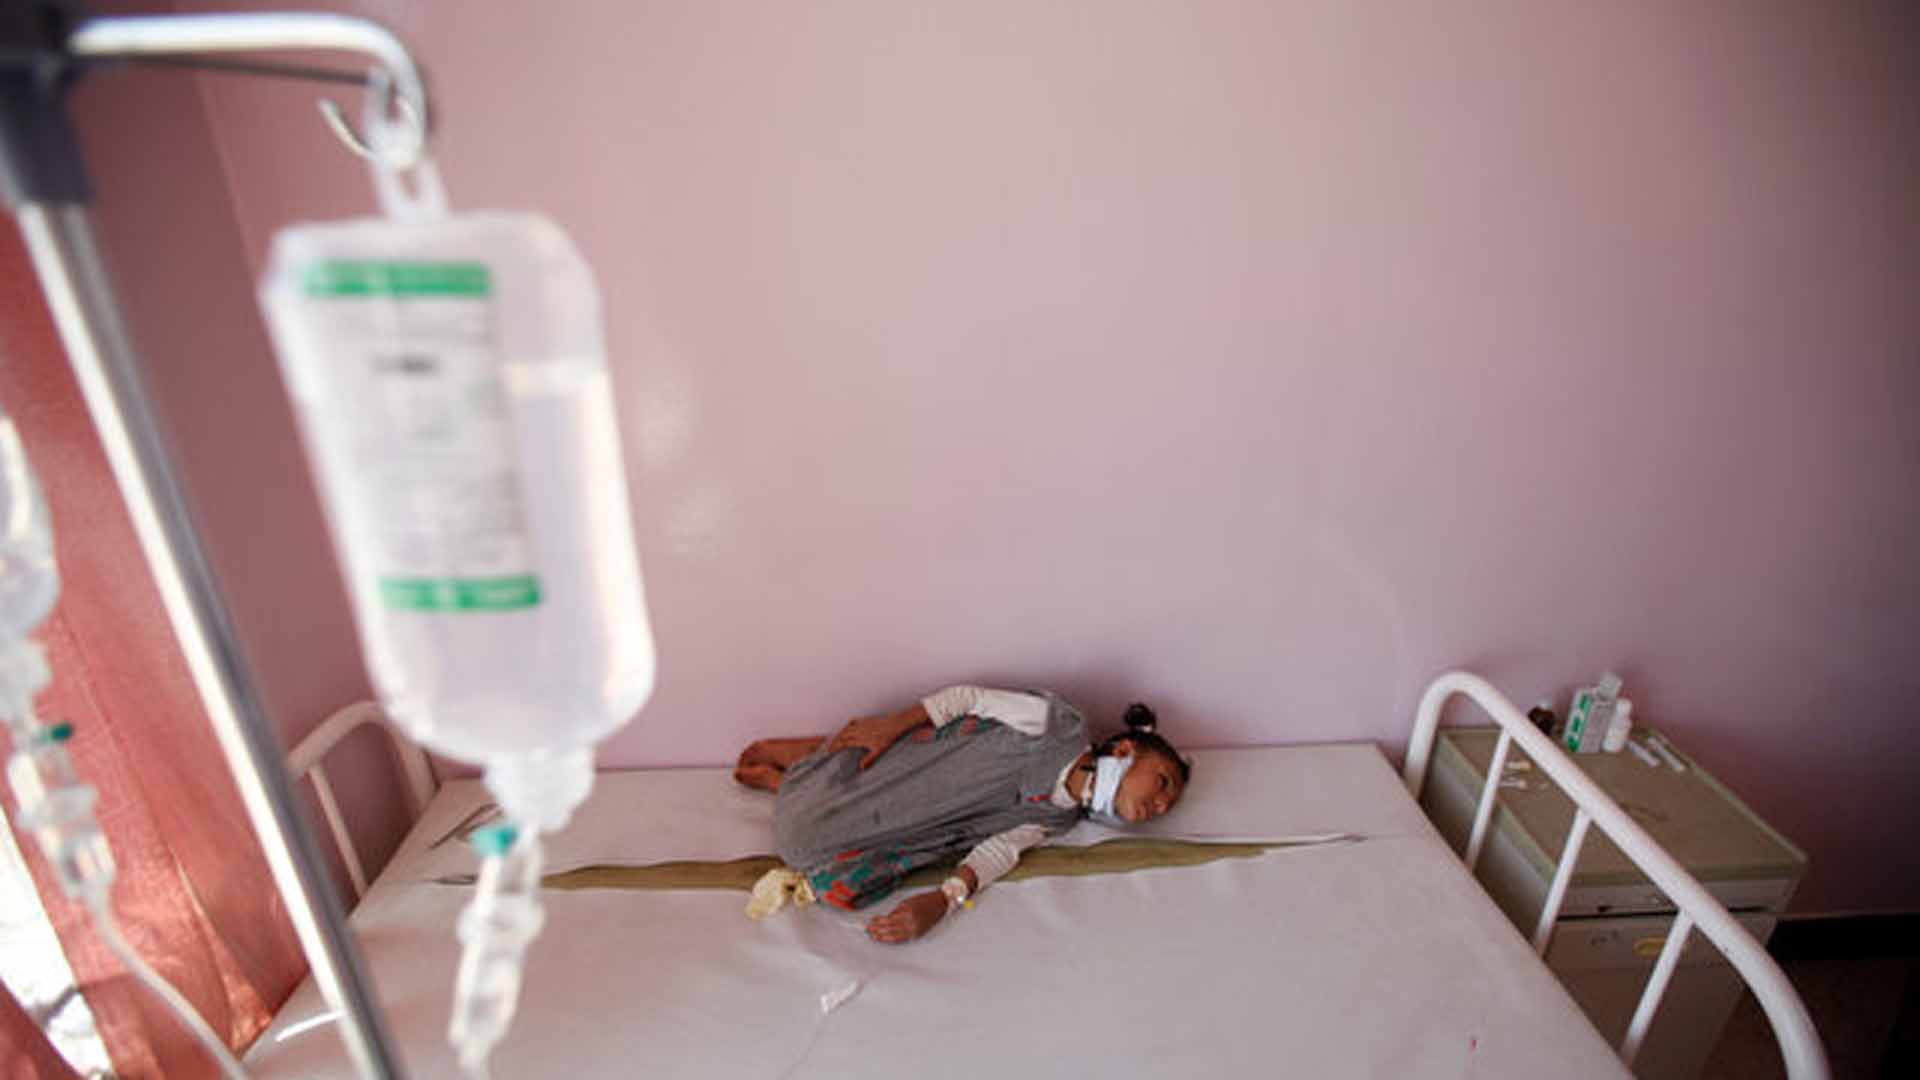 Casos de cólera en Yemen